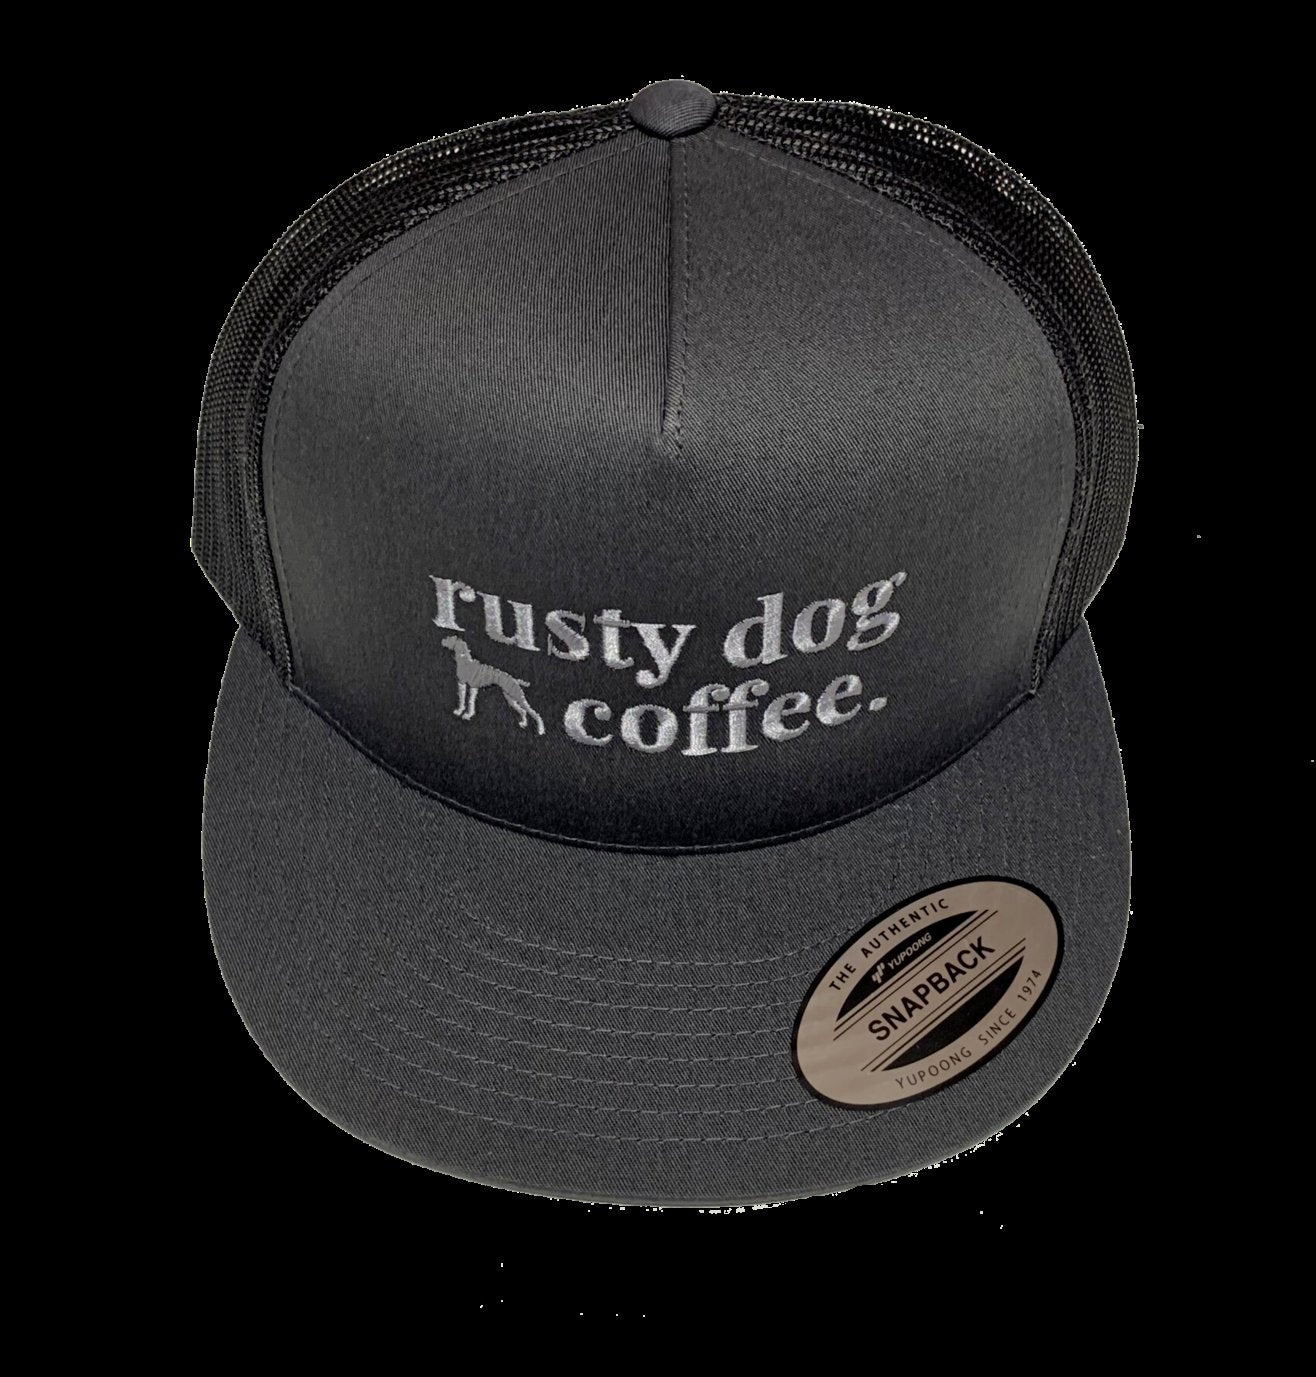 https://www.rustydogcoffee.com/cdn/shop/collections/Rusty-Dog-Coffee-Roasting-Madison-WI-Tshirt-folded_1440x.jpg?v=1608875241